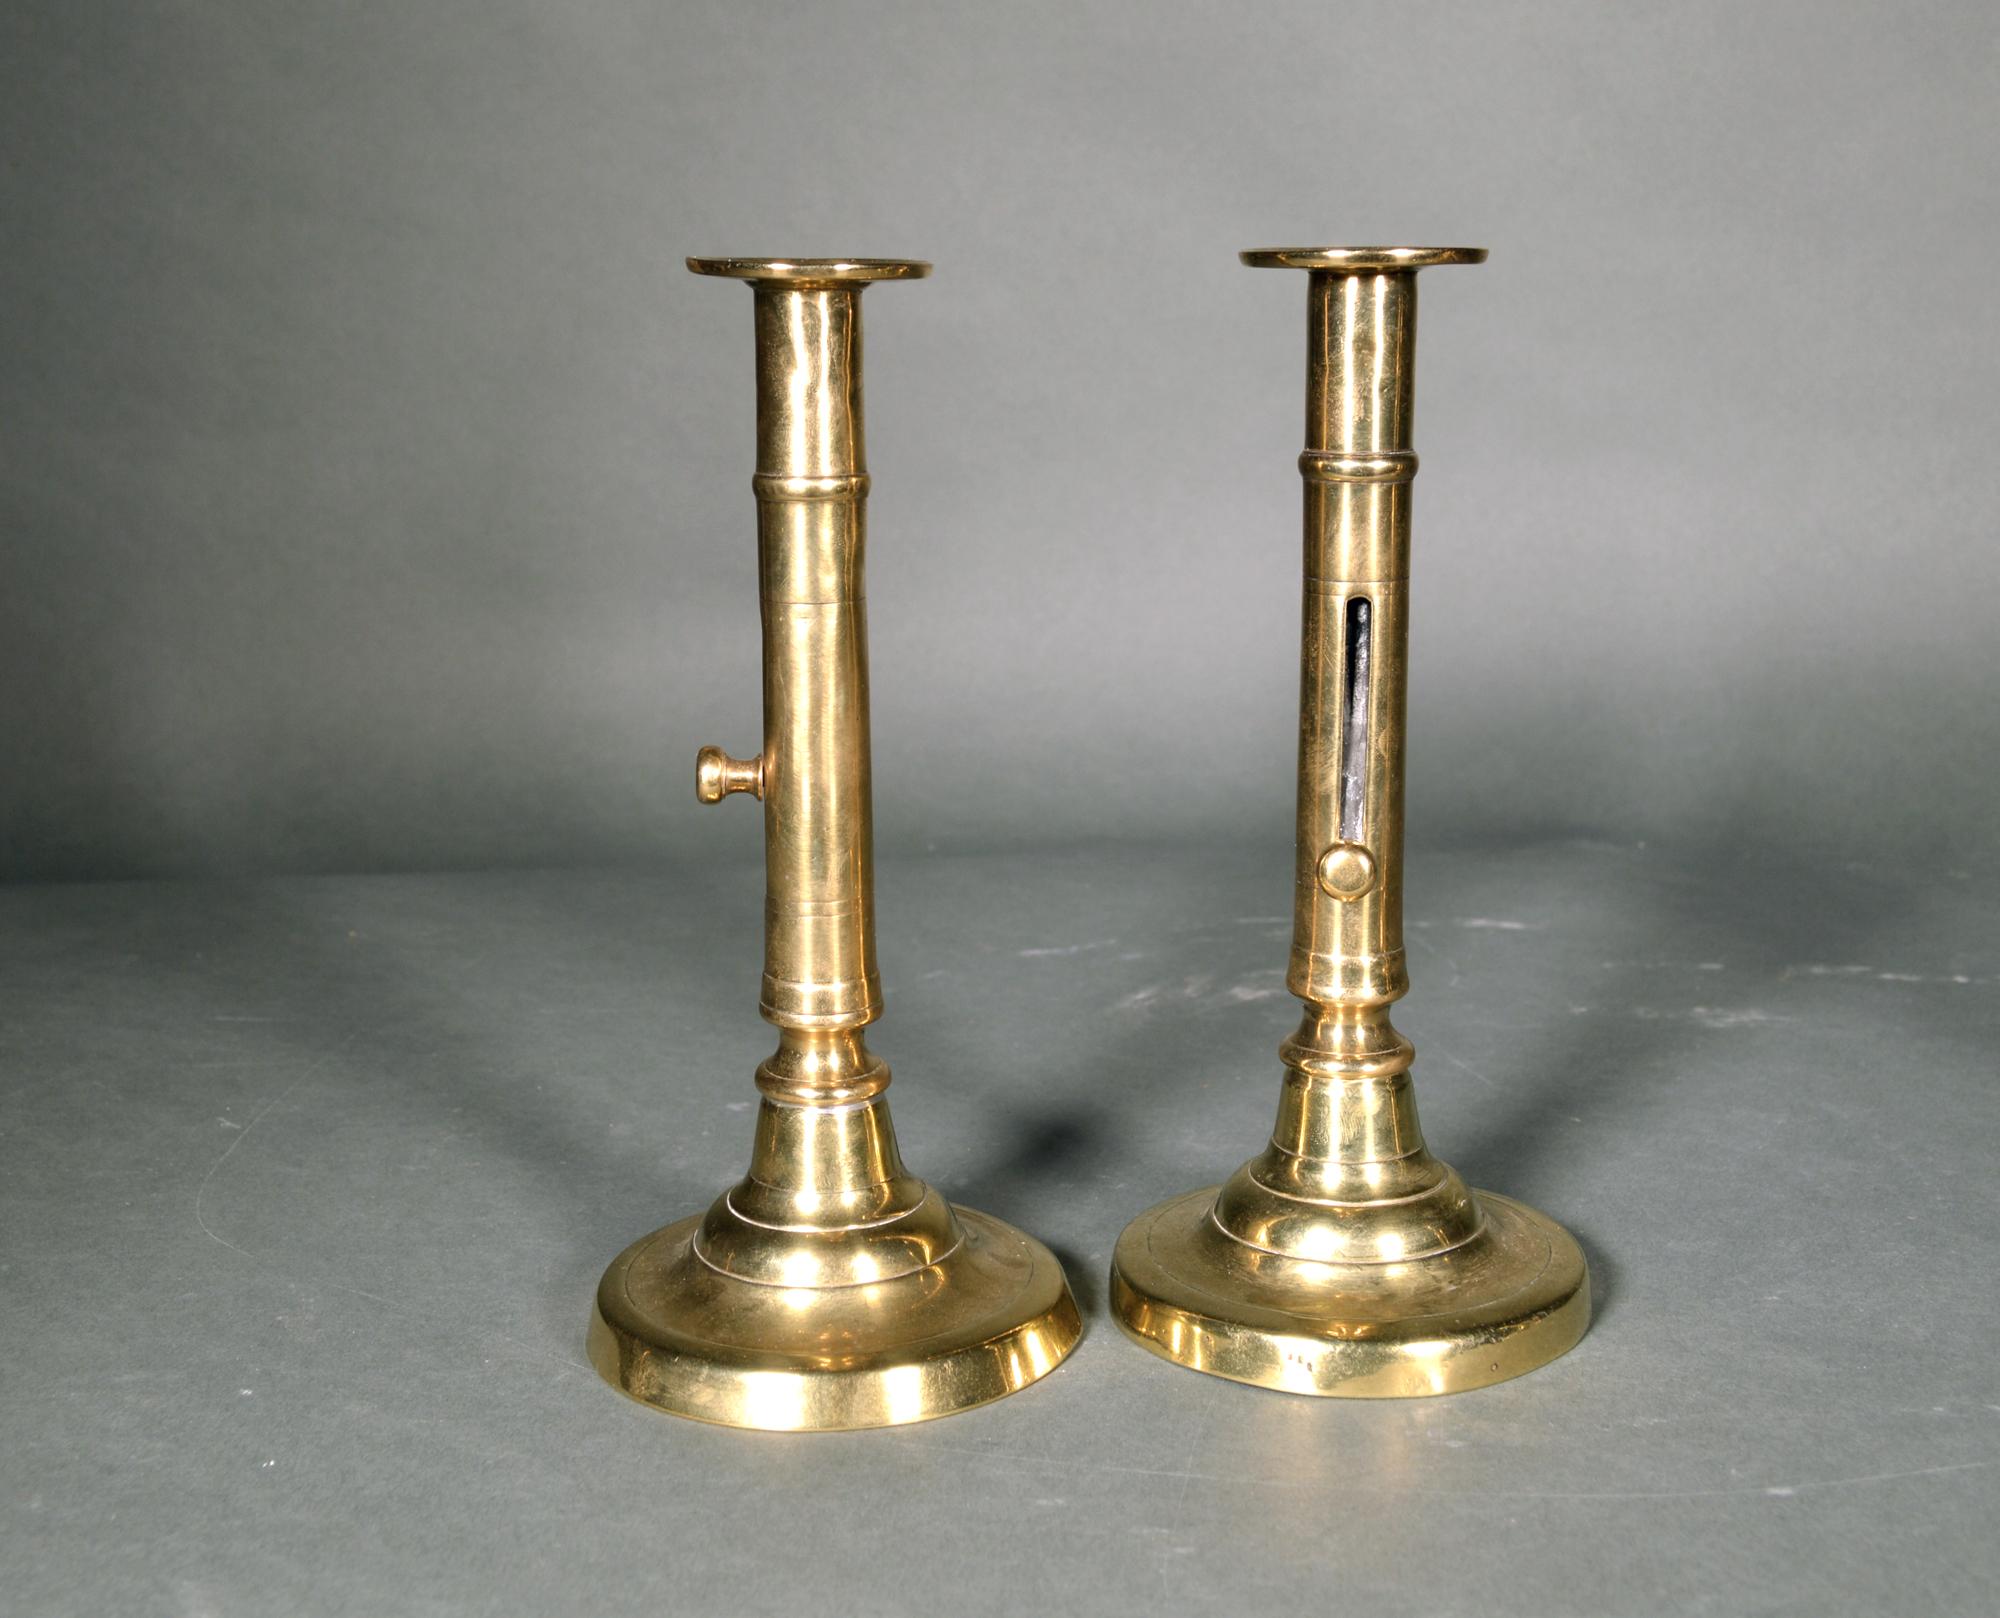 Antique paire de chandeliers anglais géorgiens en laiton à éjection latérale,
Circa 1770-1800

La paire de chandeliers en laiton à poussoir présente une base circulaire bombée avec une colonne centrale dotée d'un mécanisme à bouton pour éjecter